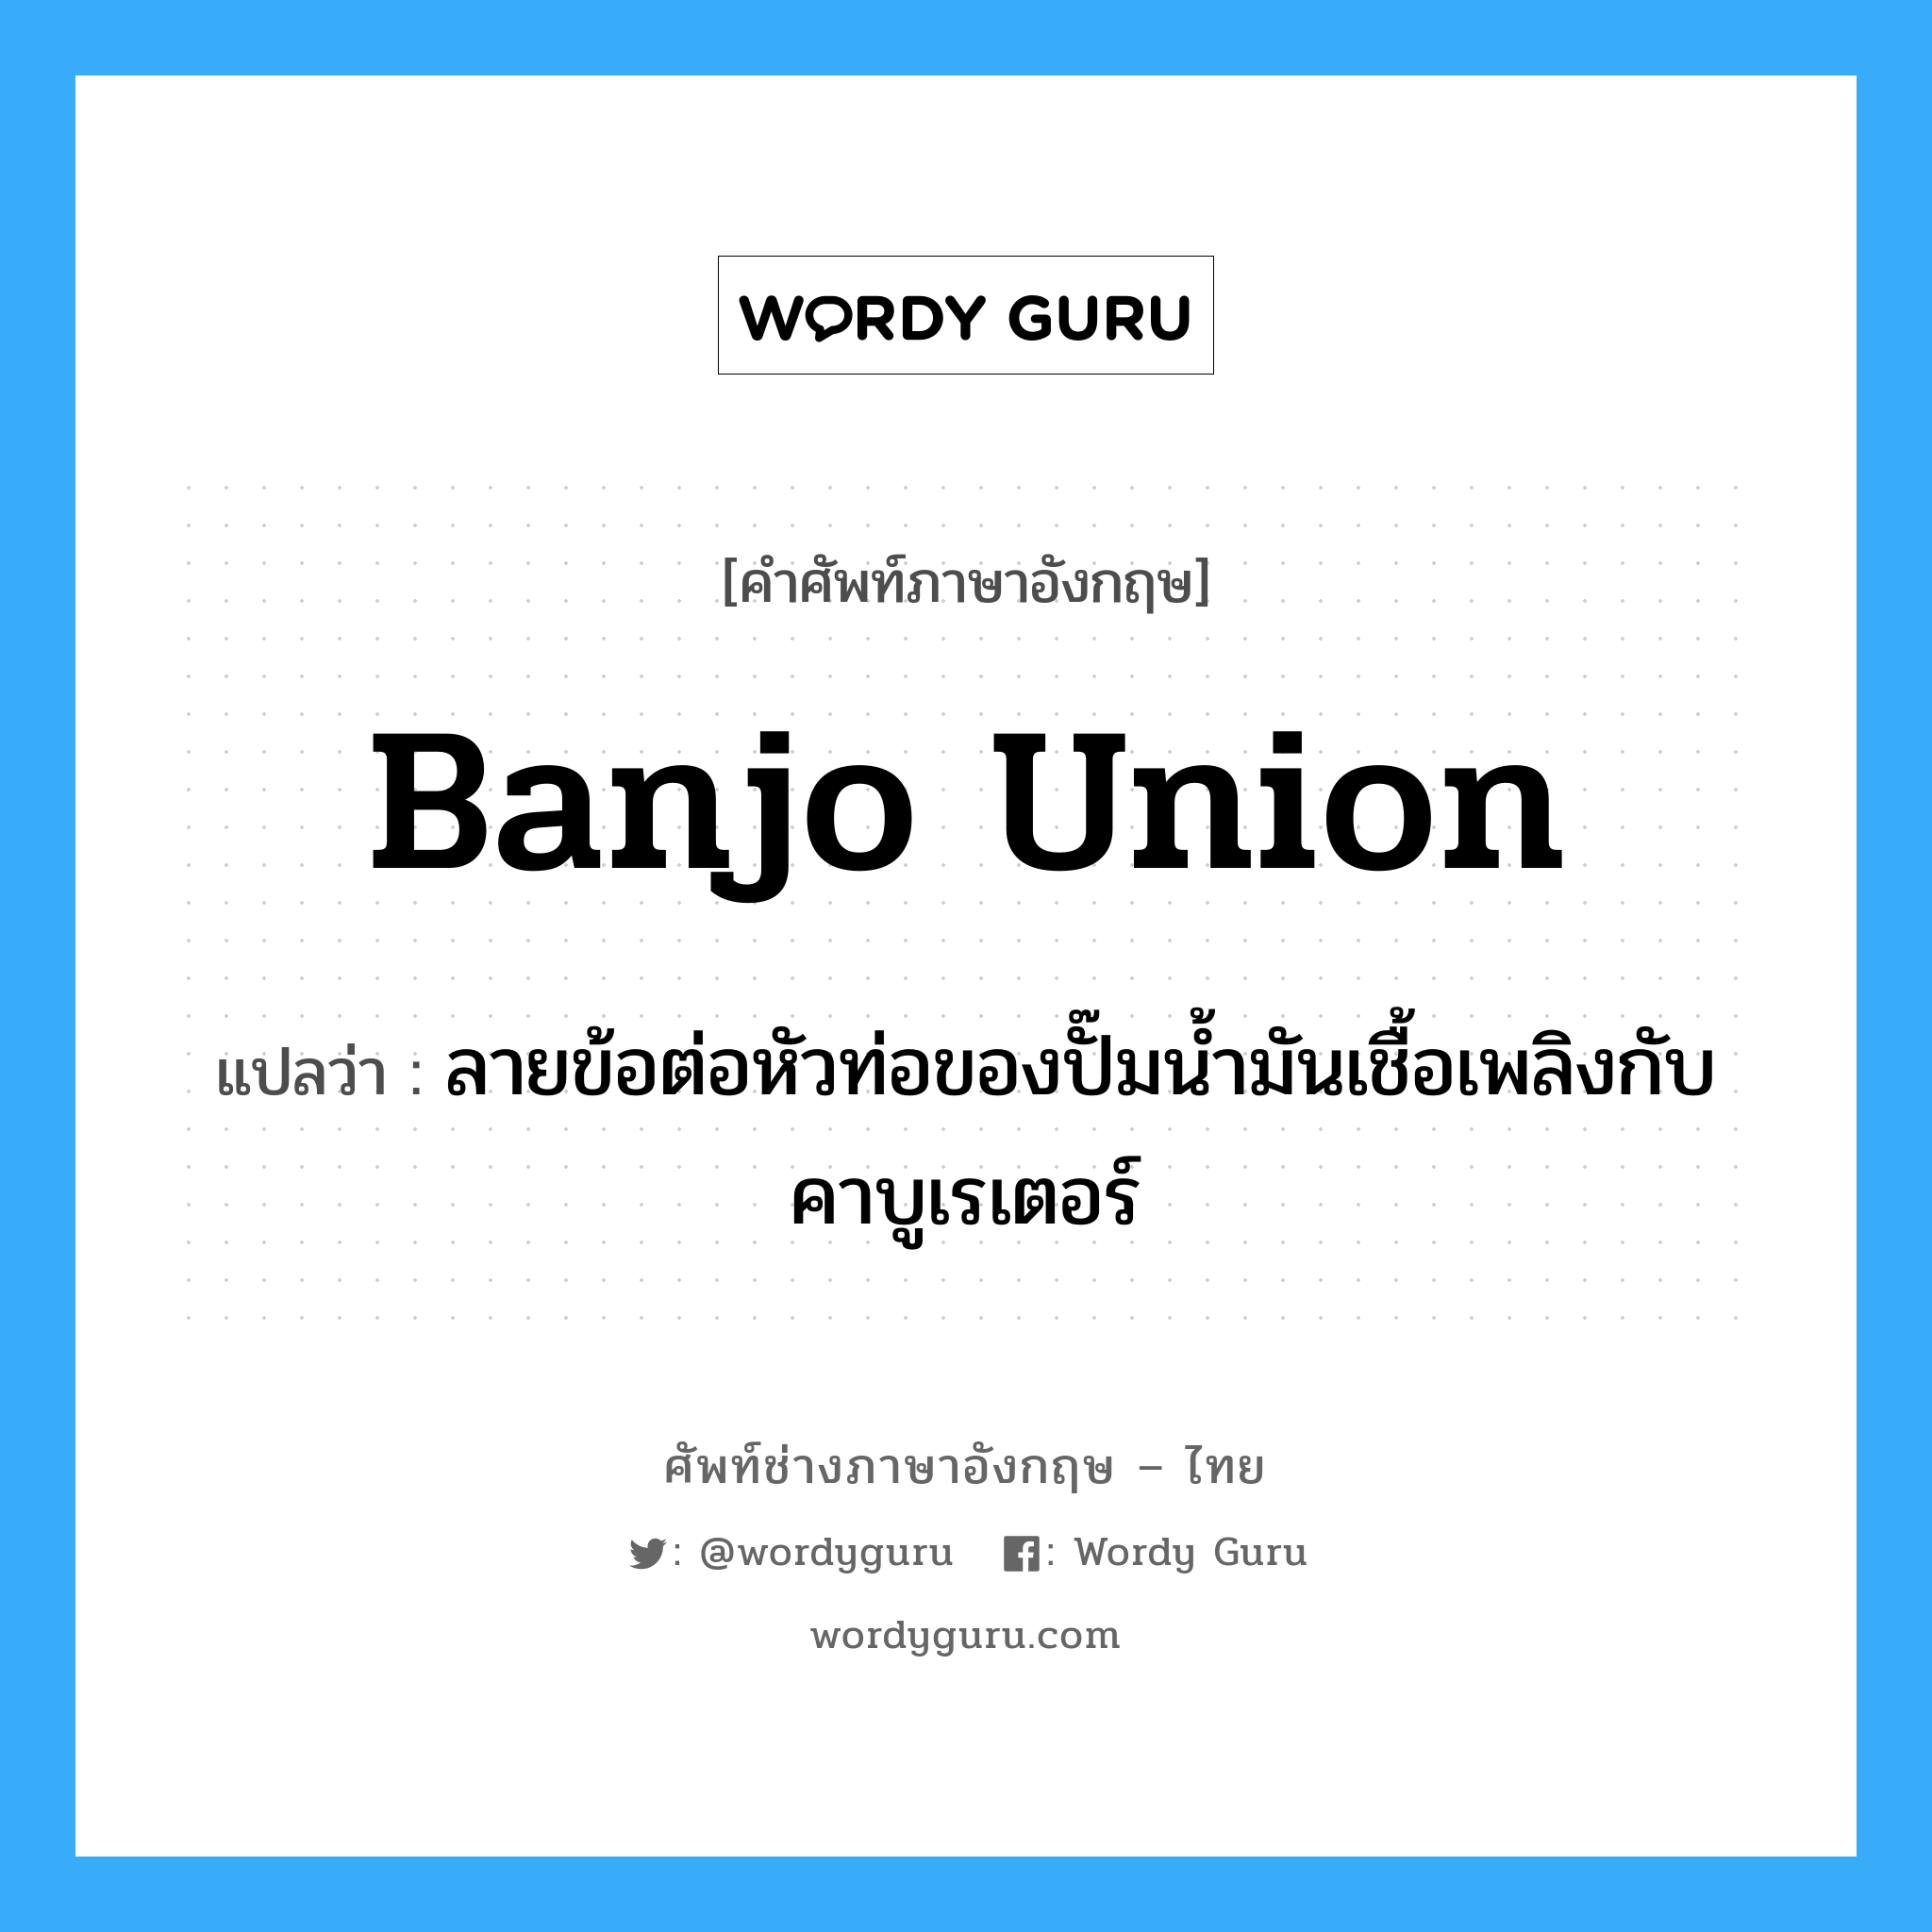 banjo union แปลว่า?, คำศัพท์ช่างภาษาอังกฤษ - ไทย banjo union คำศัพท์ภาษาอังกฤษ banjo union แปลว่า ลายข้อต่อหัวท่อของปั๊มน้ำมันเชื้อเพลิงกับคาบูเรเตอร์